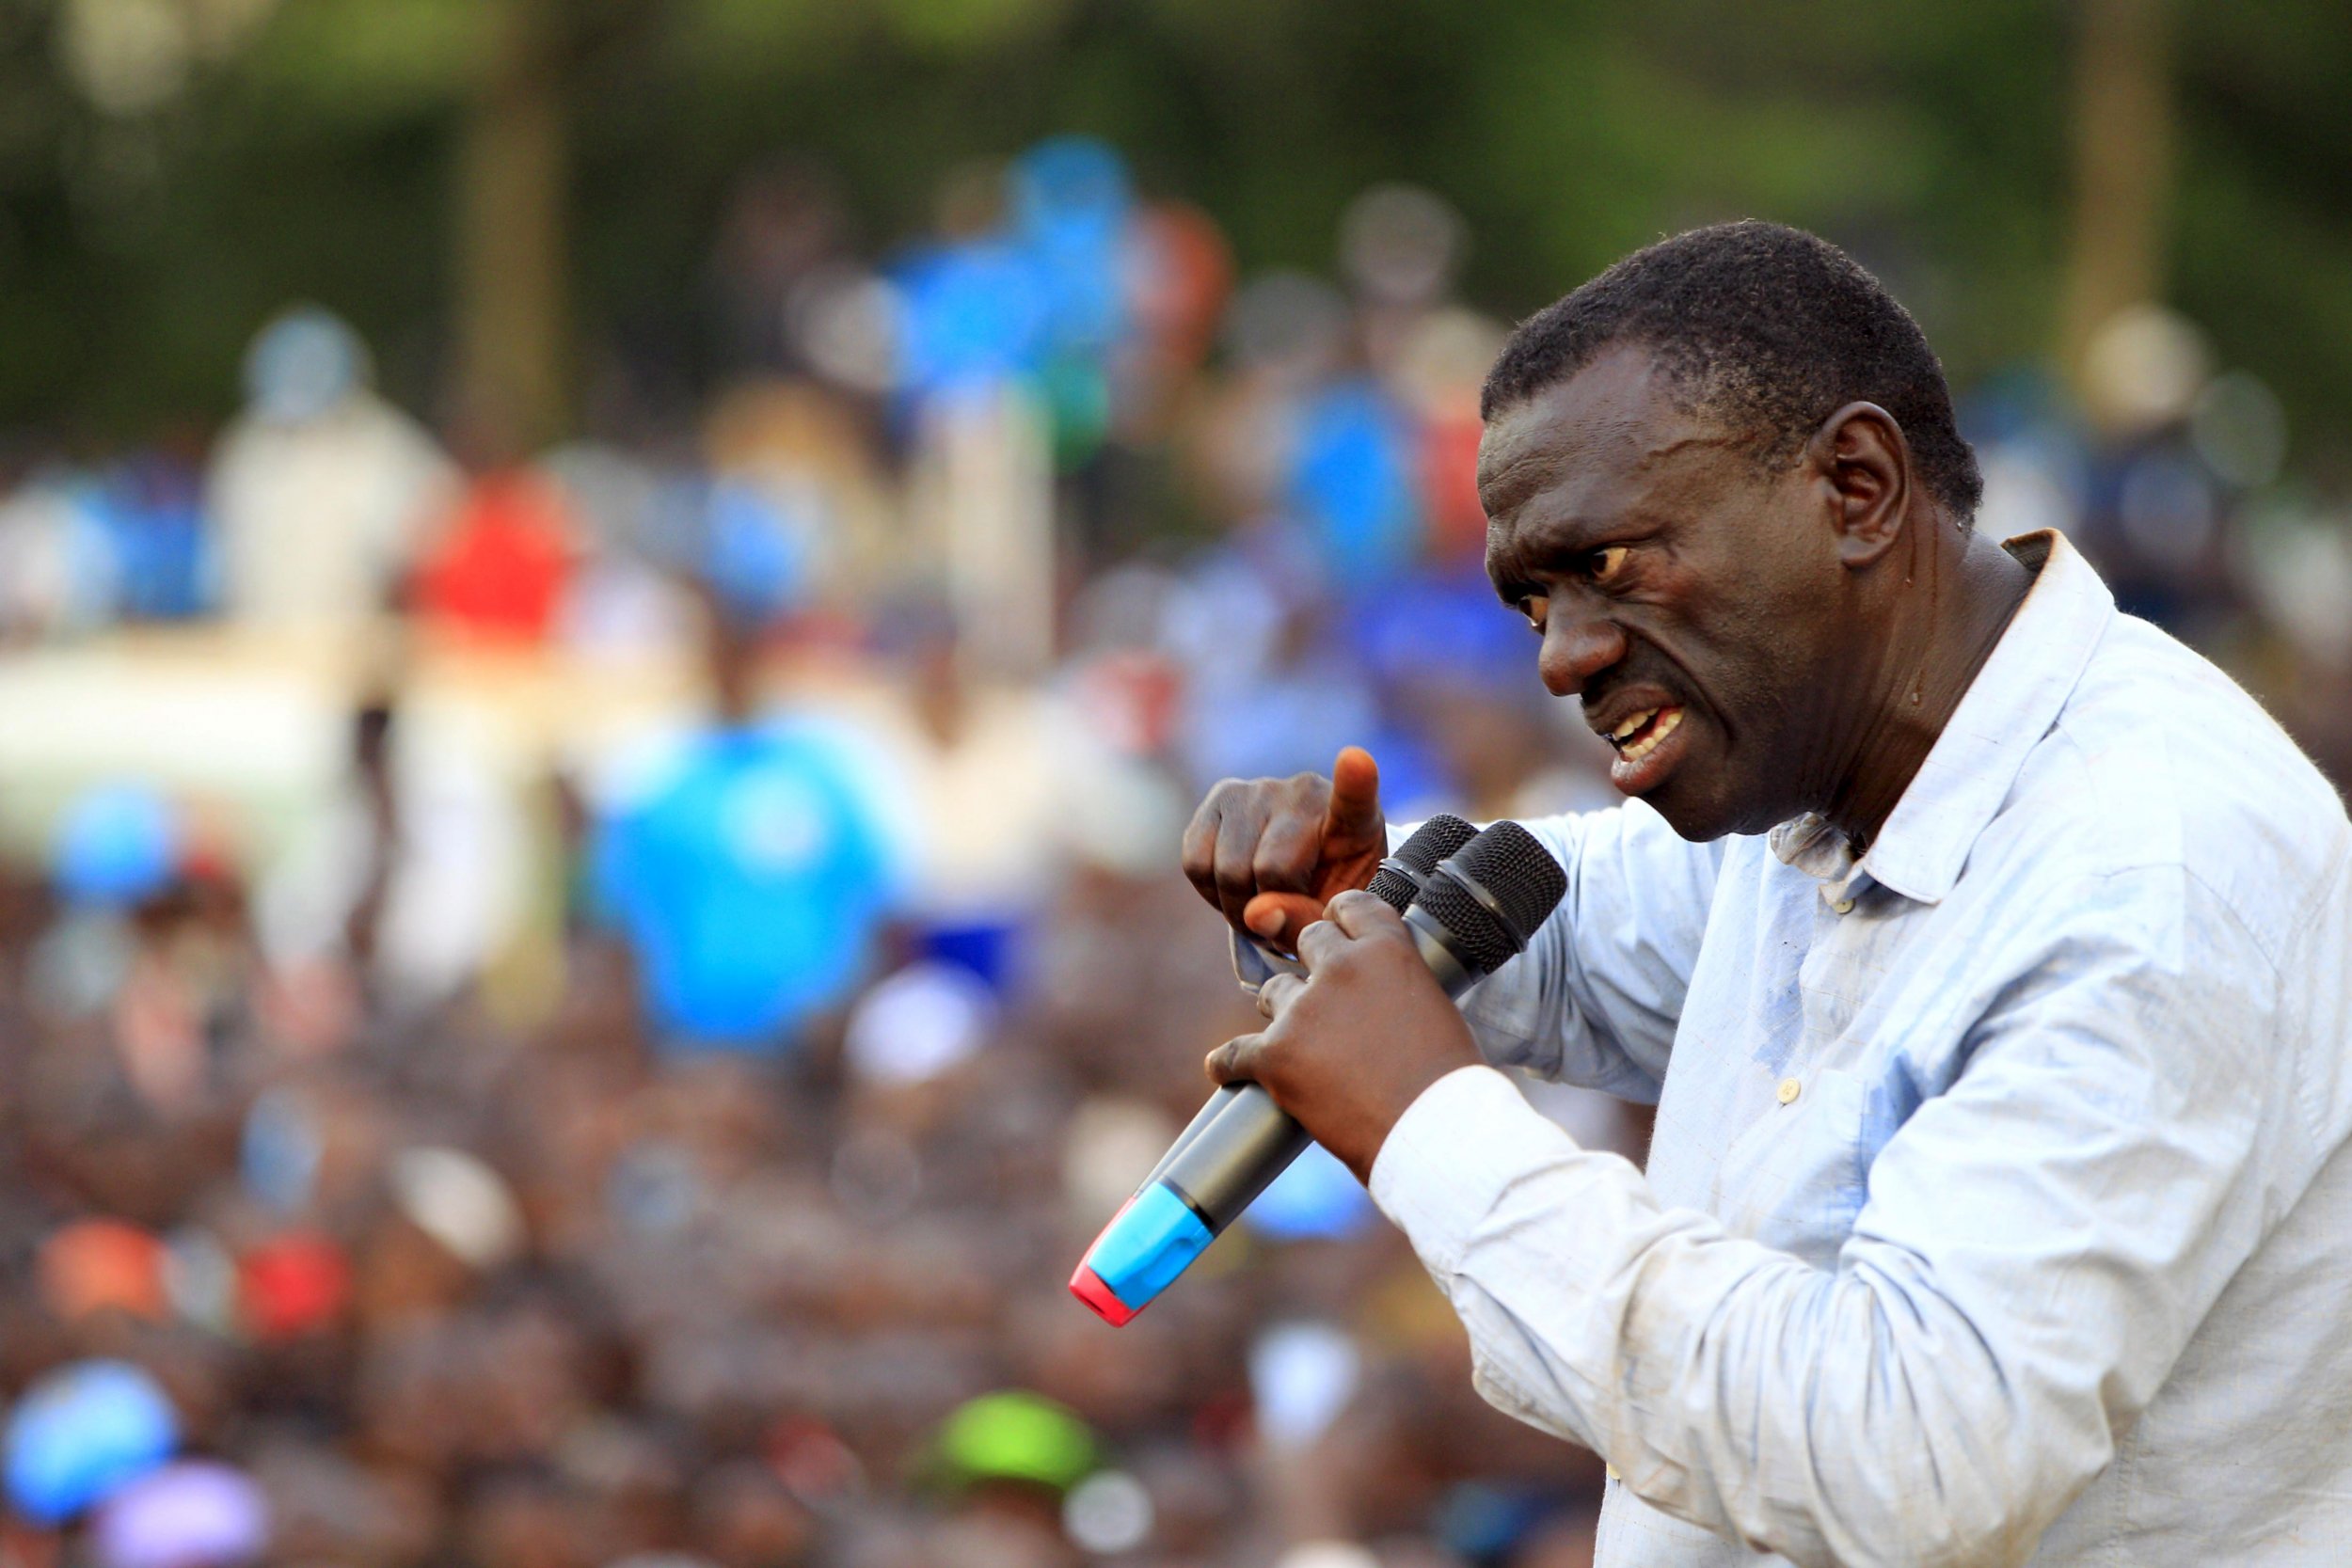 Kizza Besigye campaigns in Jinja, Uganda.